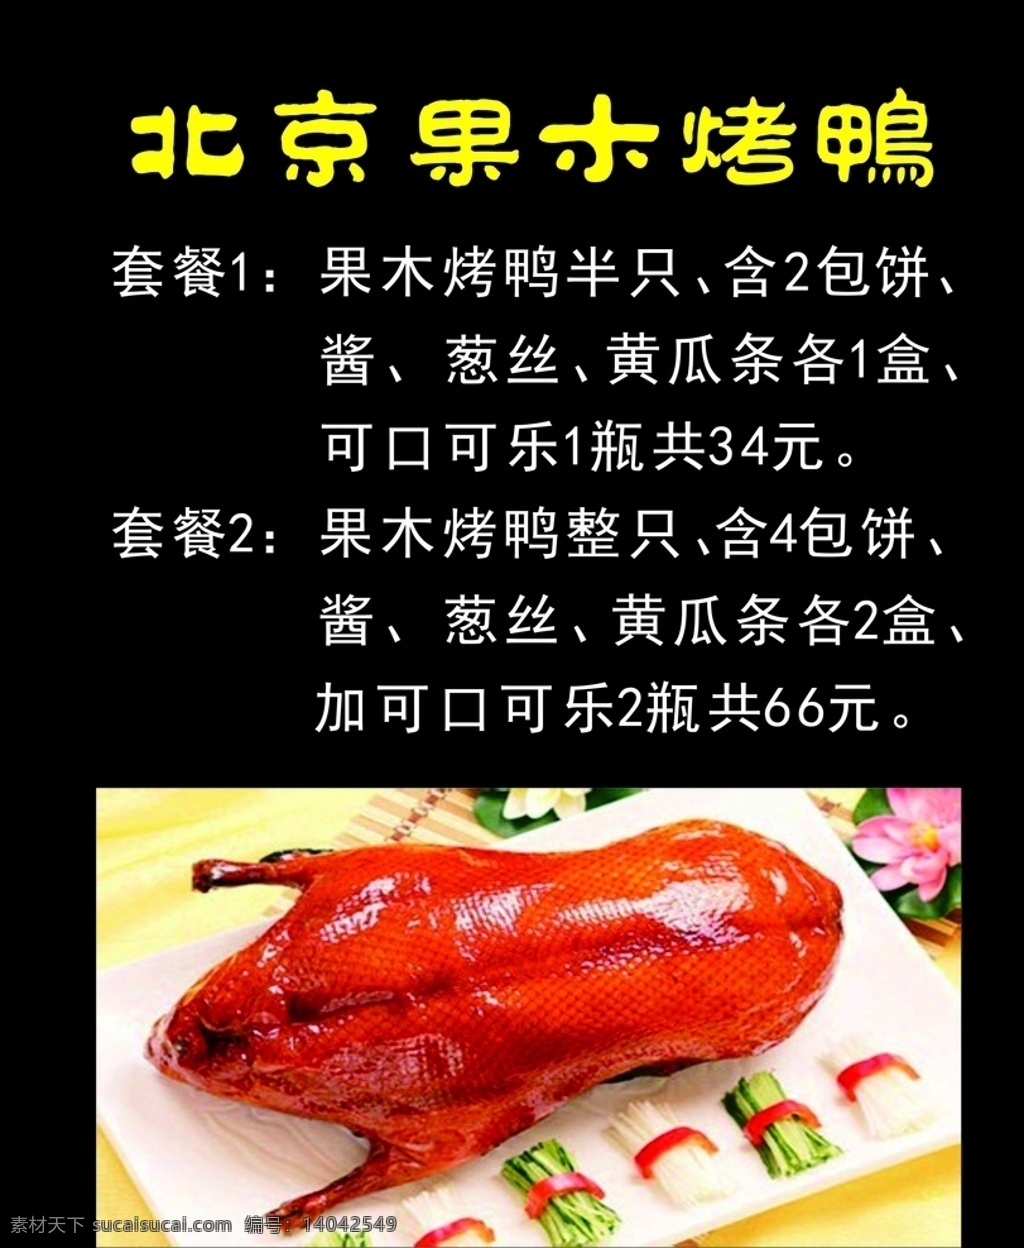 北京果木烤鸭 北京烤鸭 果木烤鸭 烤鸭 老北京烤鸭 爆烤鸭